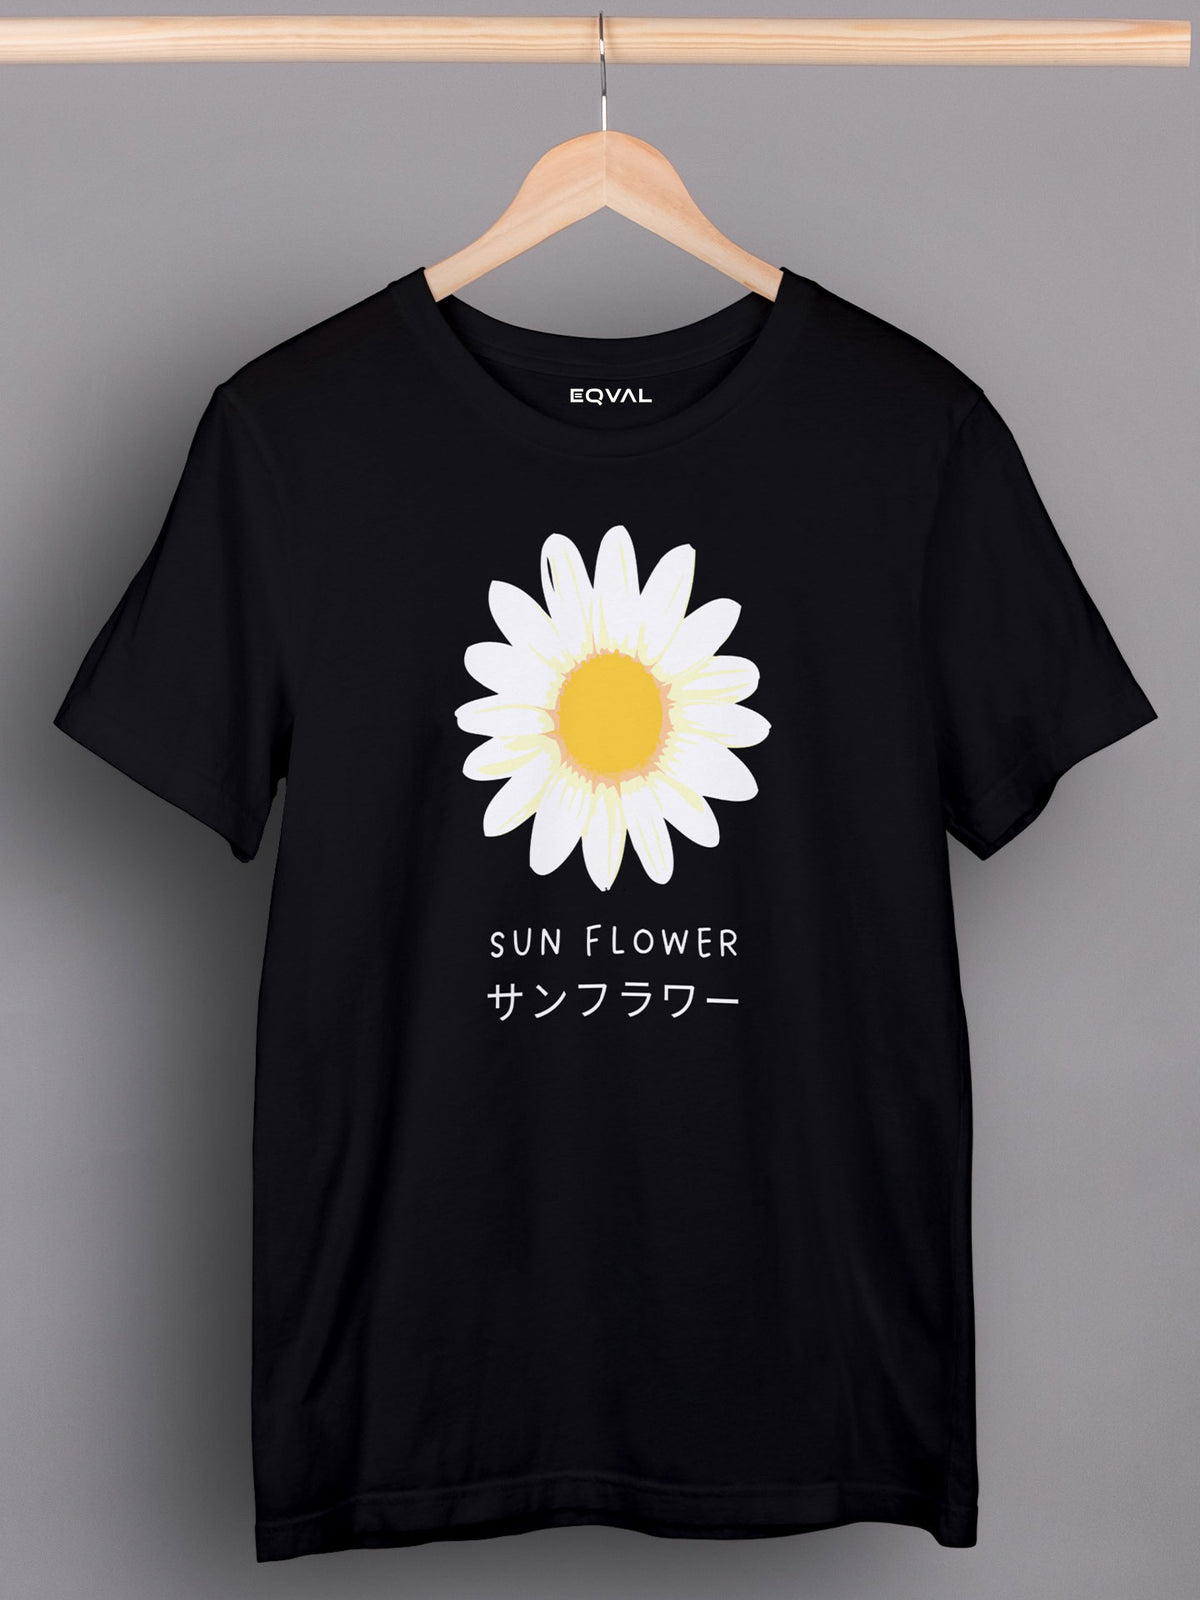 Men's Black SunFlower Printed T-shirt